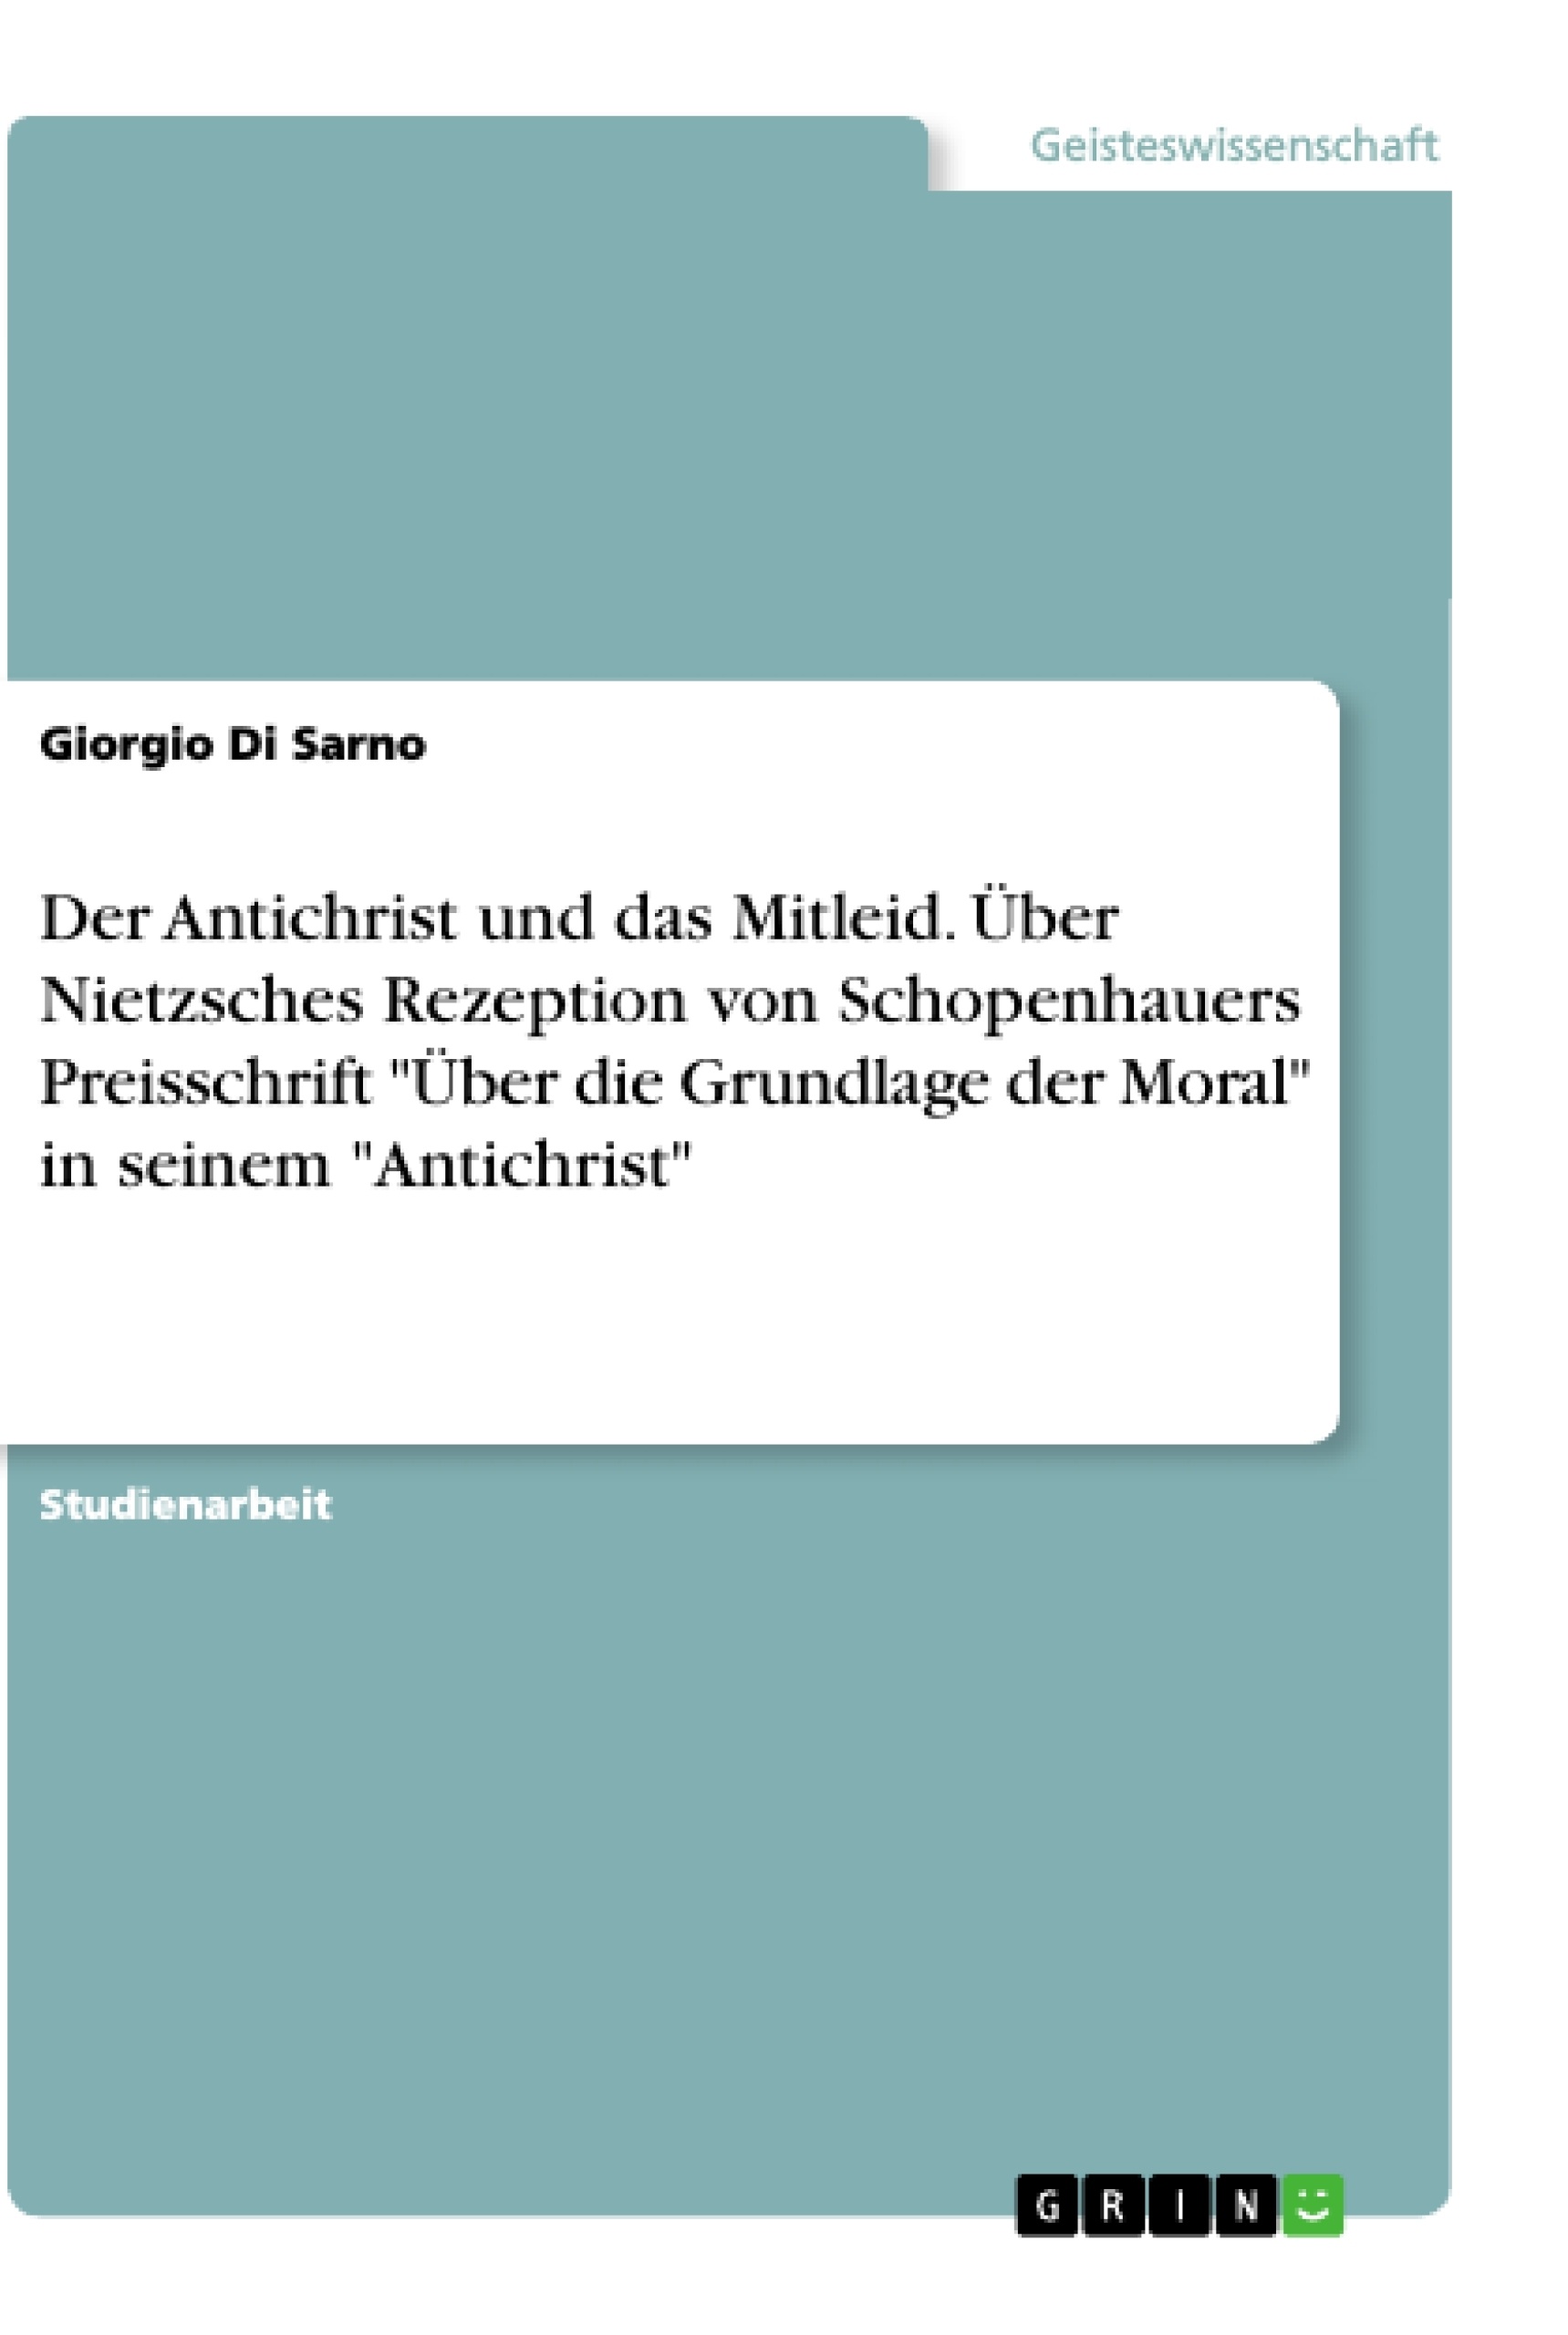 Titel: Der Antichrist und das Mitleid. Über Nietzsches Rezeption von Schopenhauers Preisschrift "Über die Grundlage der Moral" in seinem "Antichrist"